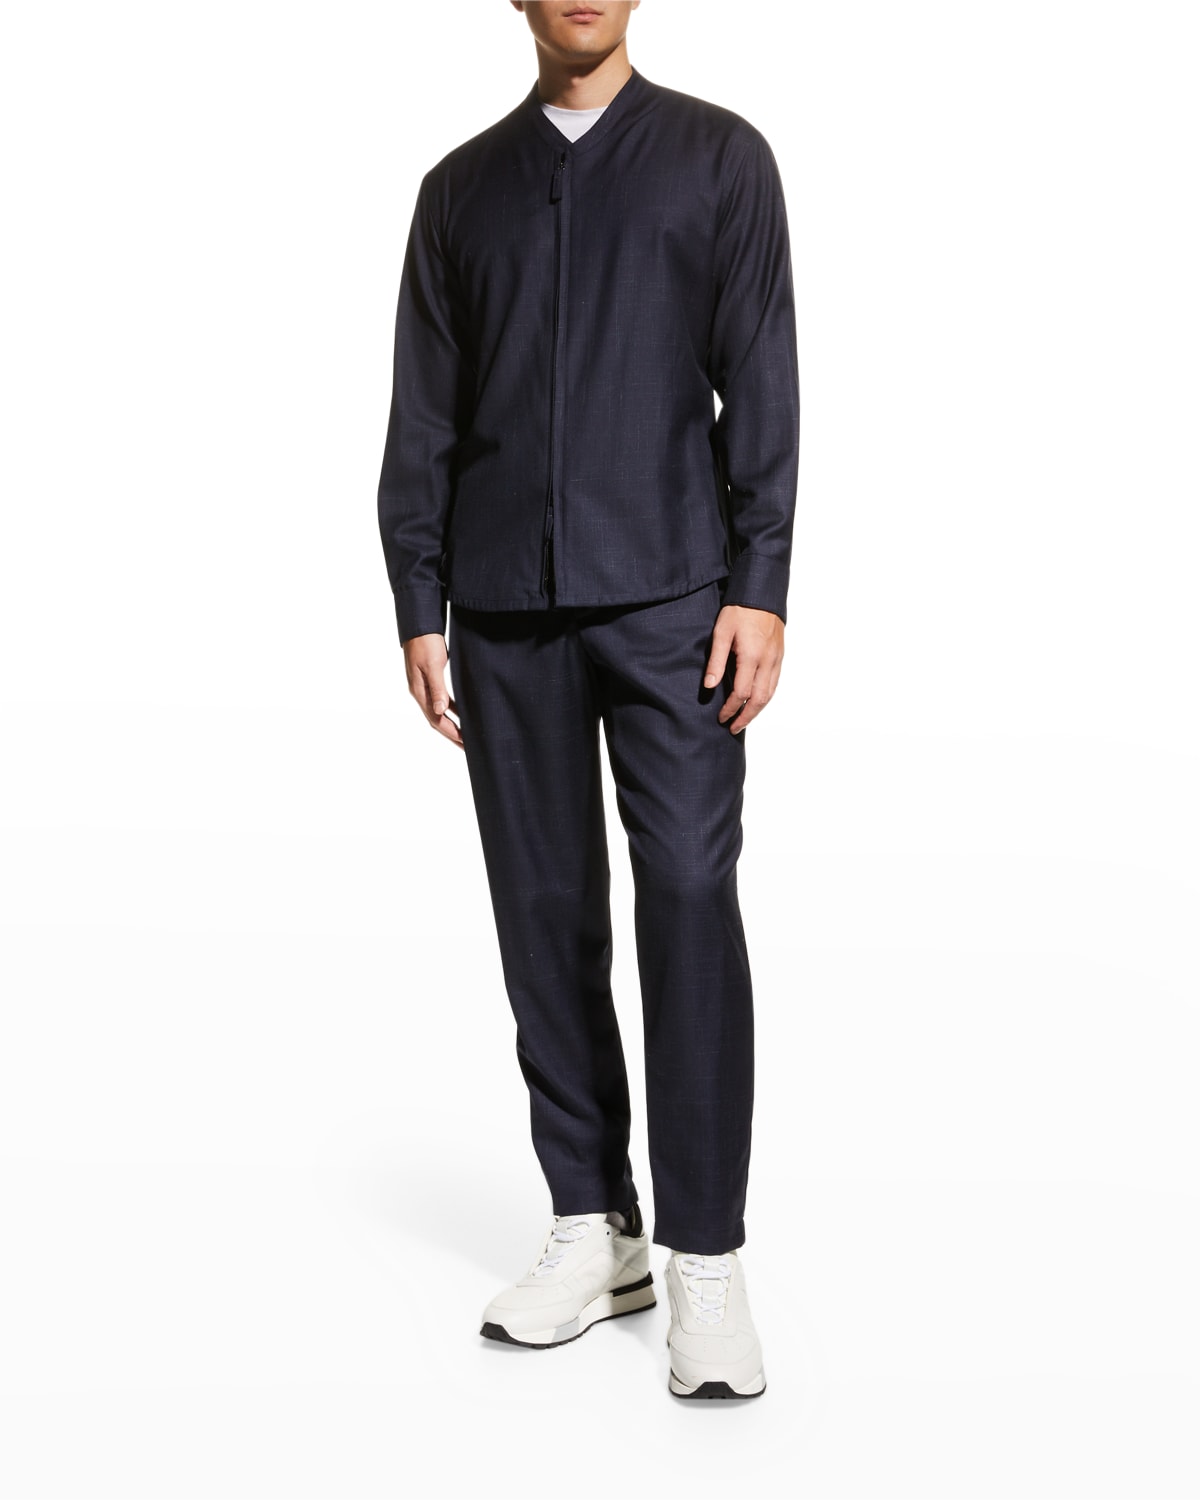 Men's Relaxed Textured Zip-Top Suit